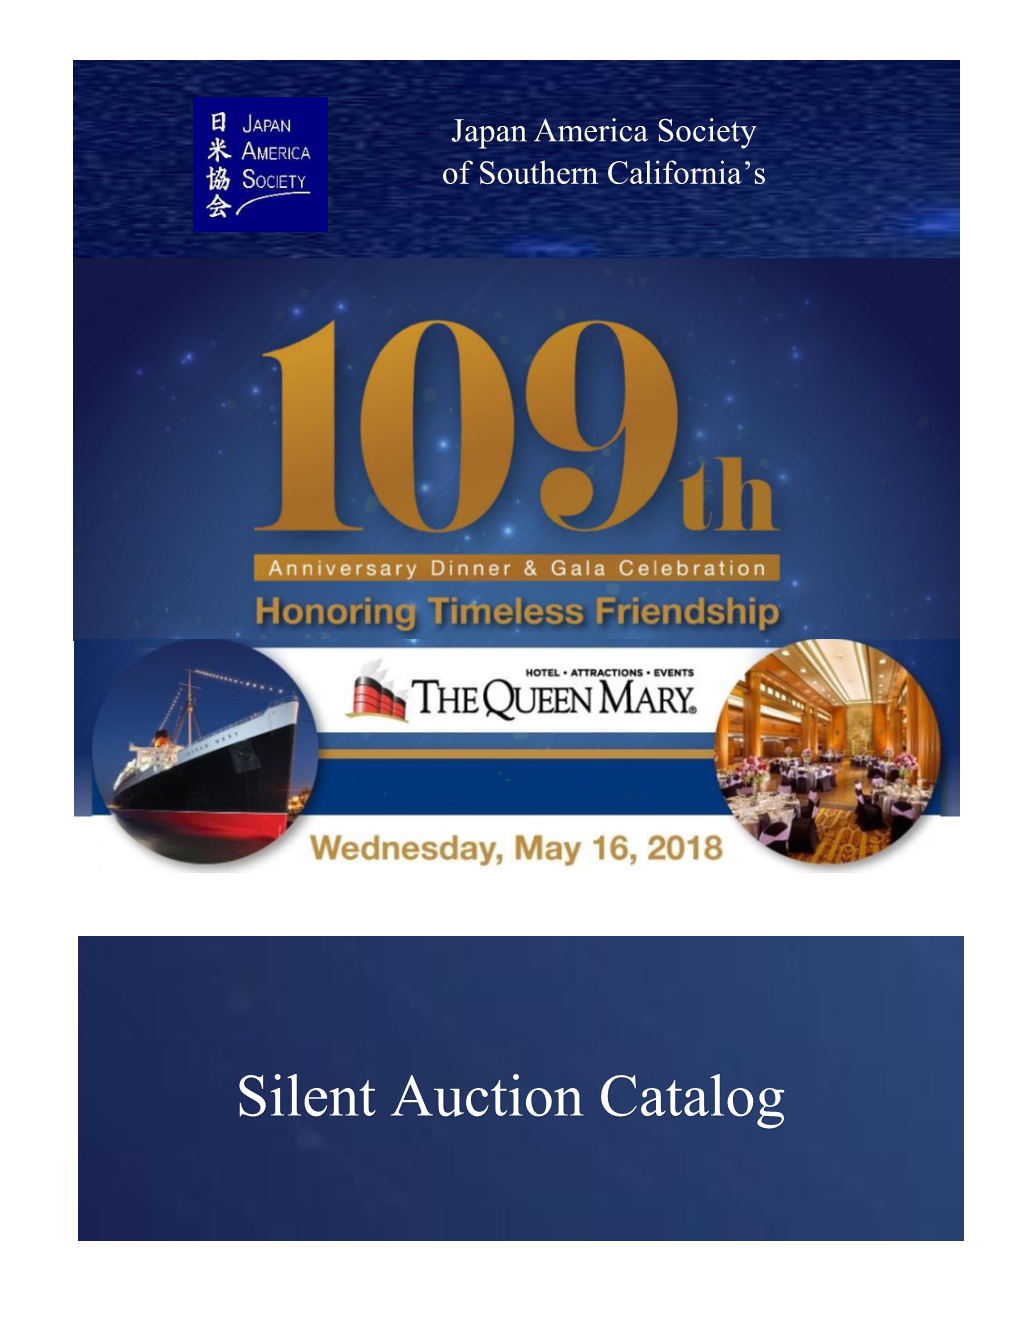 Silent Auction Catalog Silent Auction Rules 1